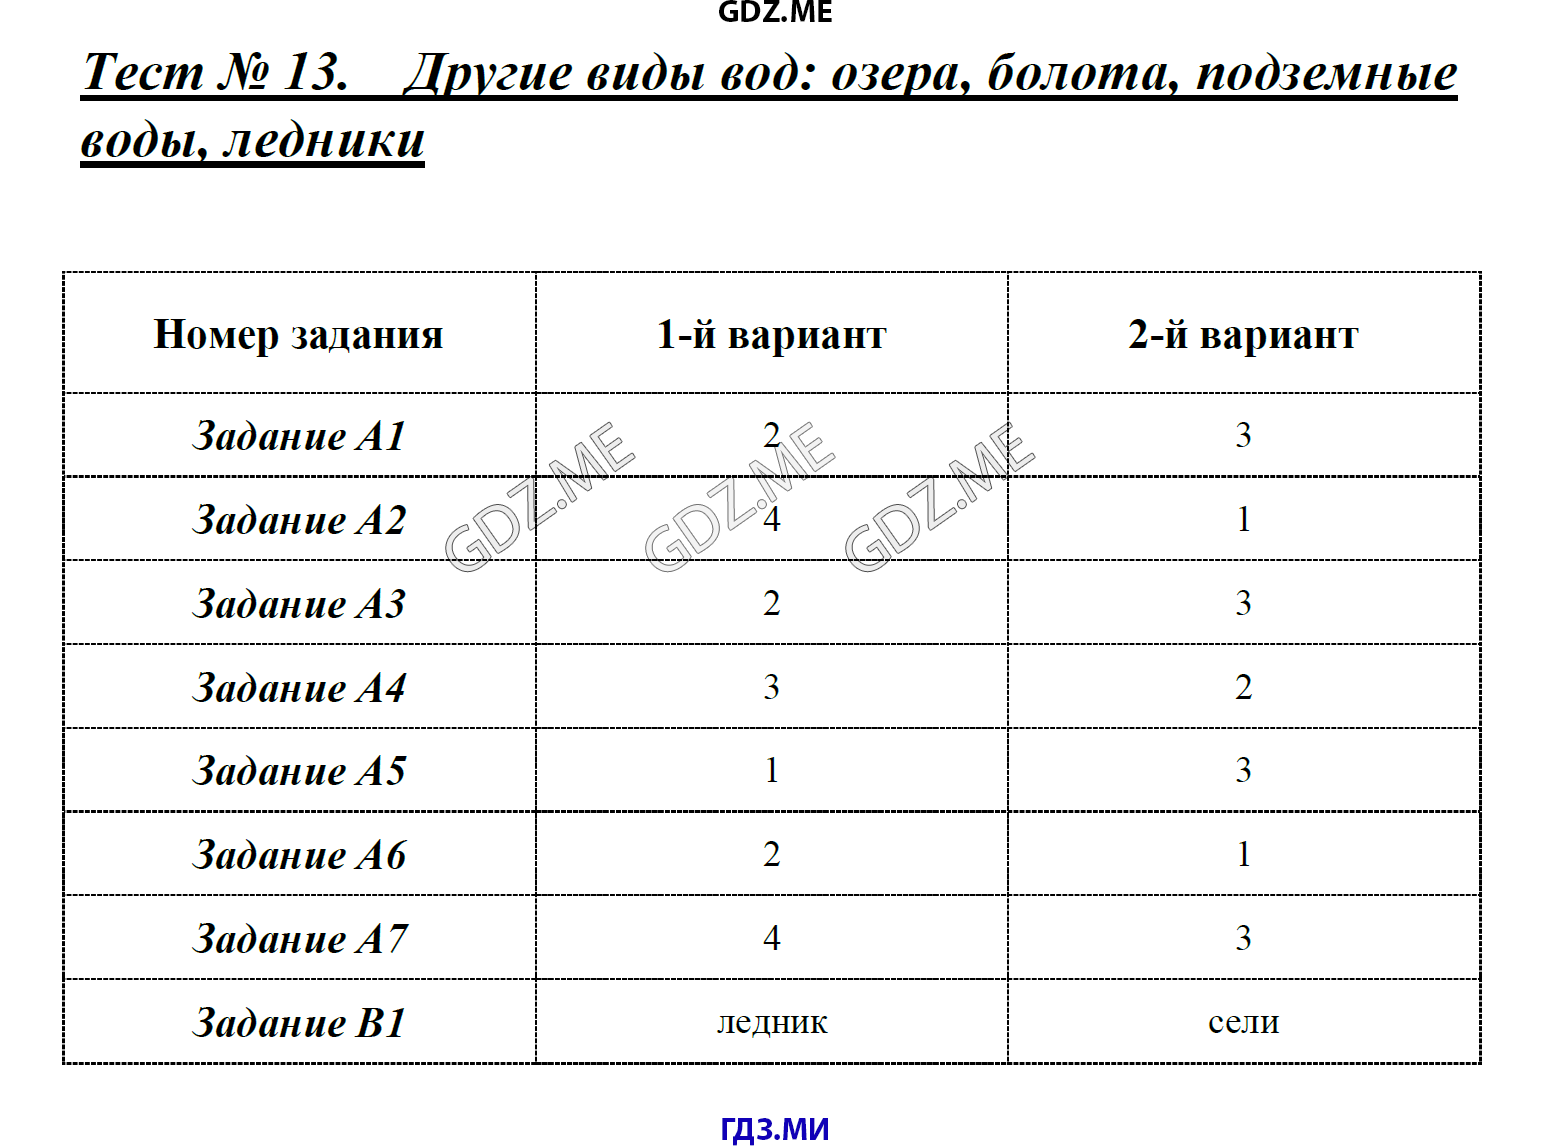 Готовая таблица по географии 8 класс типы климатов в россии